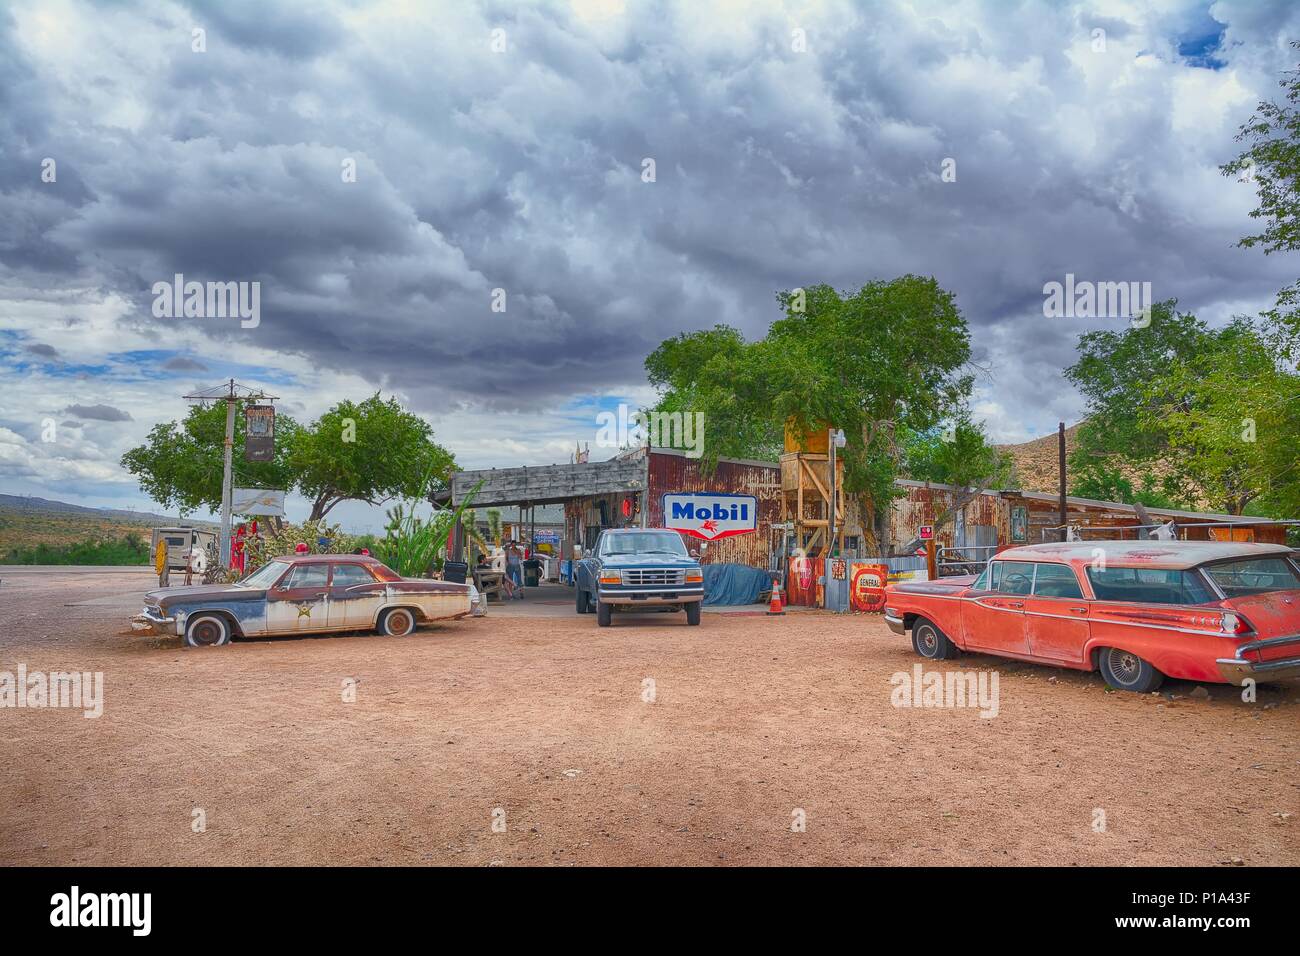 Hackberry, Arizona, USA - 24. Juli 2017: Die berühmten historischen Route 66 Highway mit dem alten General Store von Menschen aus aller Welt besucht wird. Stockfoto